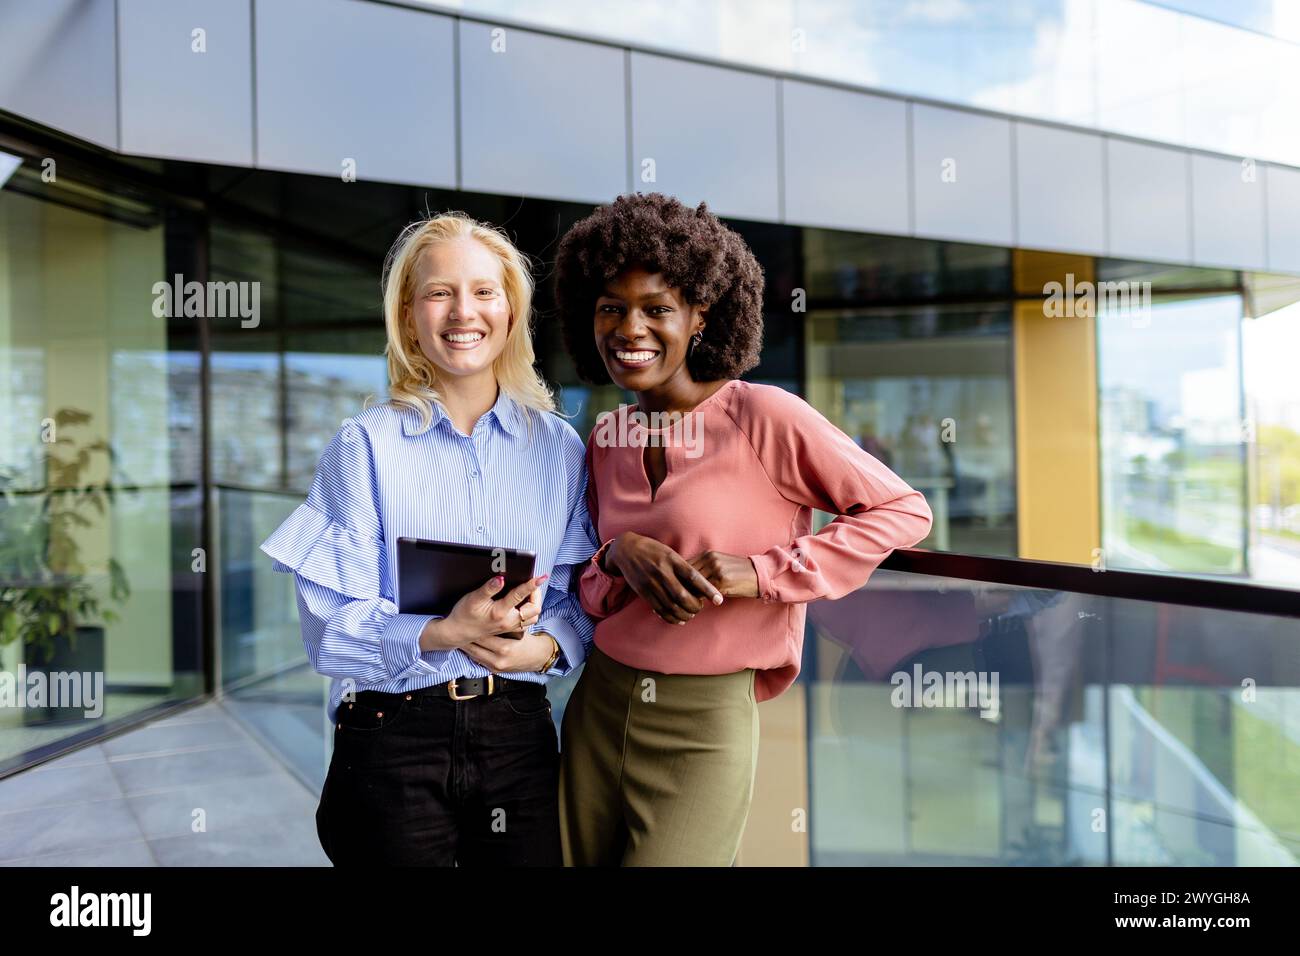 Zwei Frauen mit ähnlichen Merkmalen stehen nebeneinander, lächelnd, vor der großen Architektur. Stockfoto